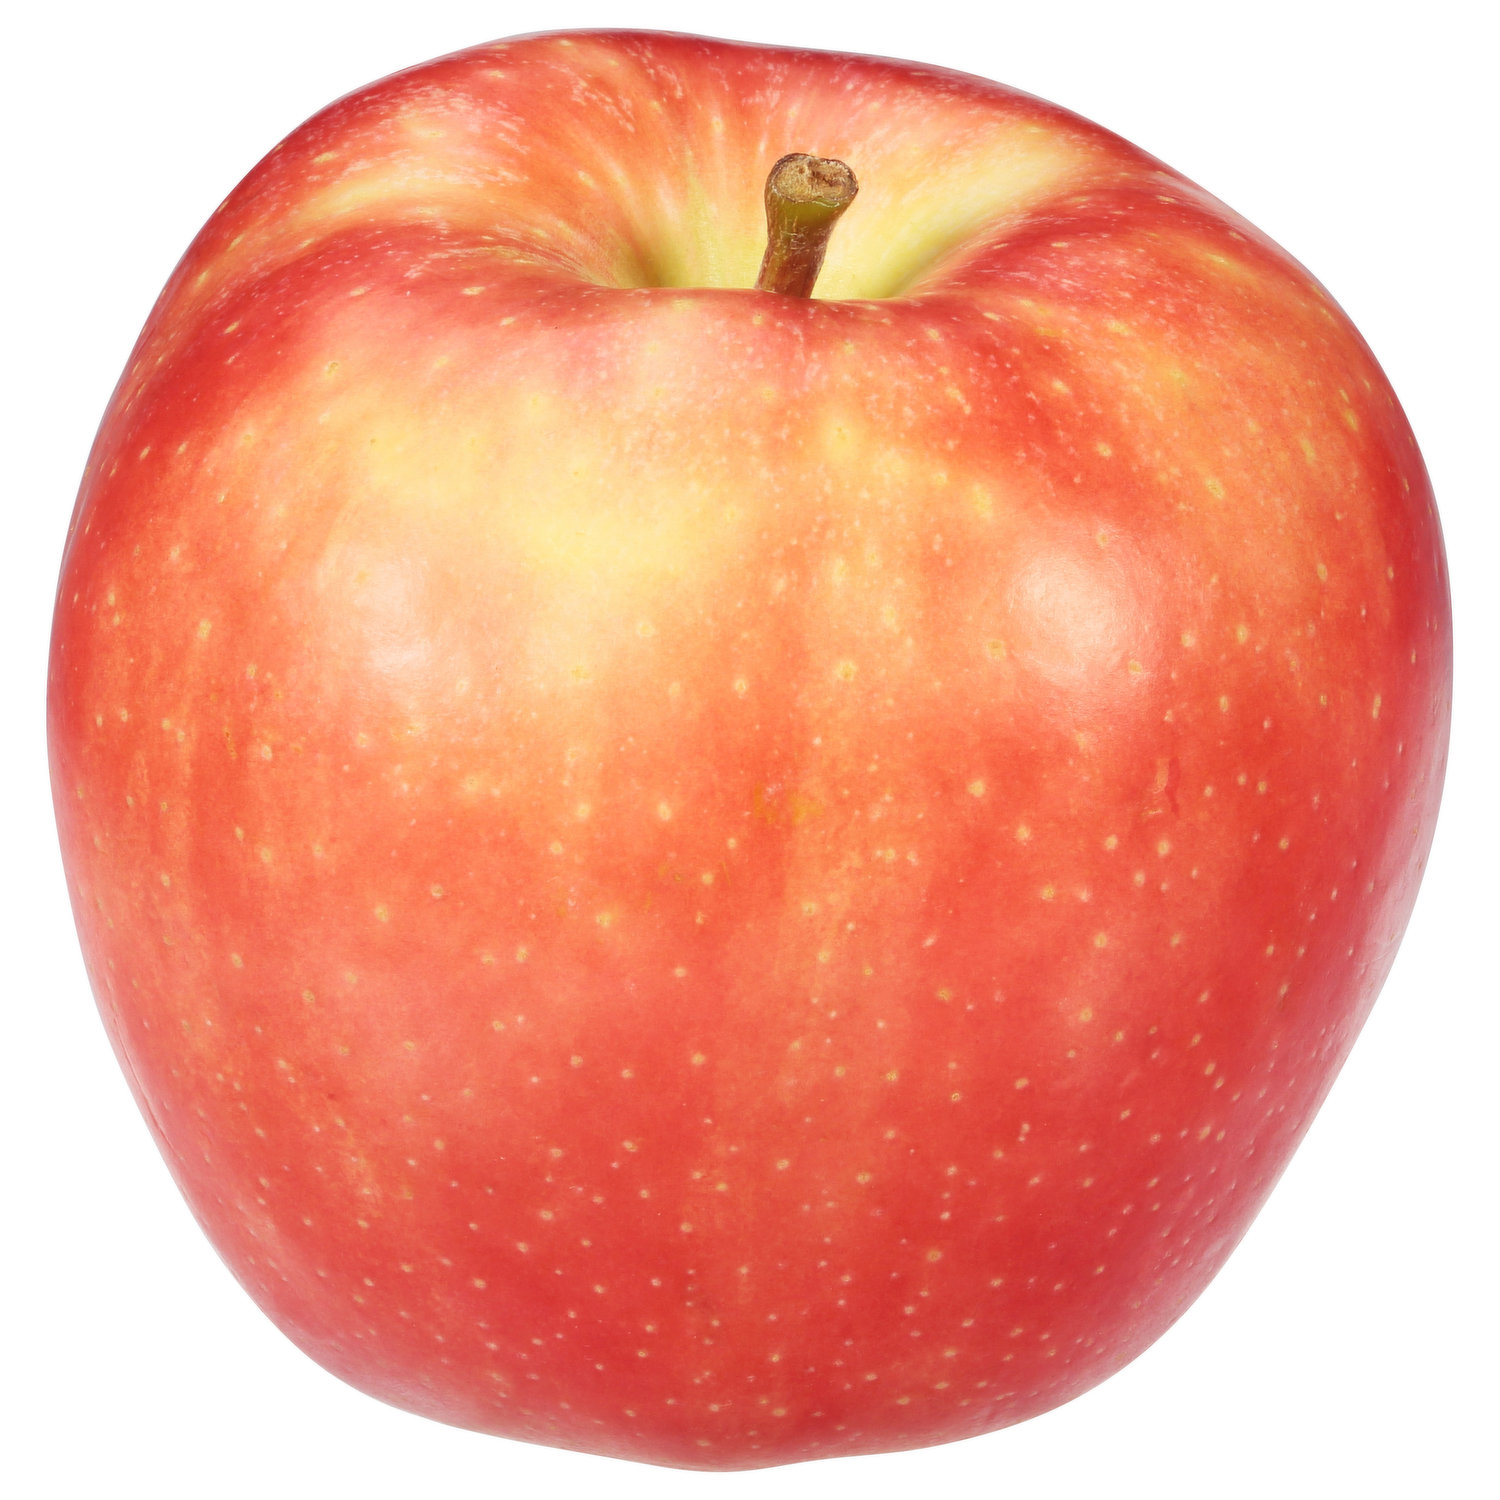 SugarBee Apple 2 lb